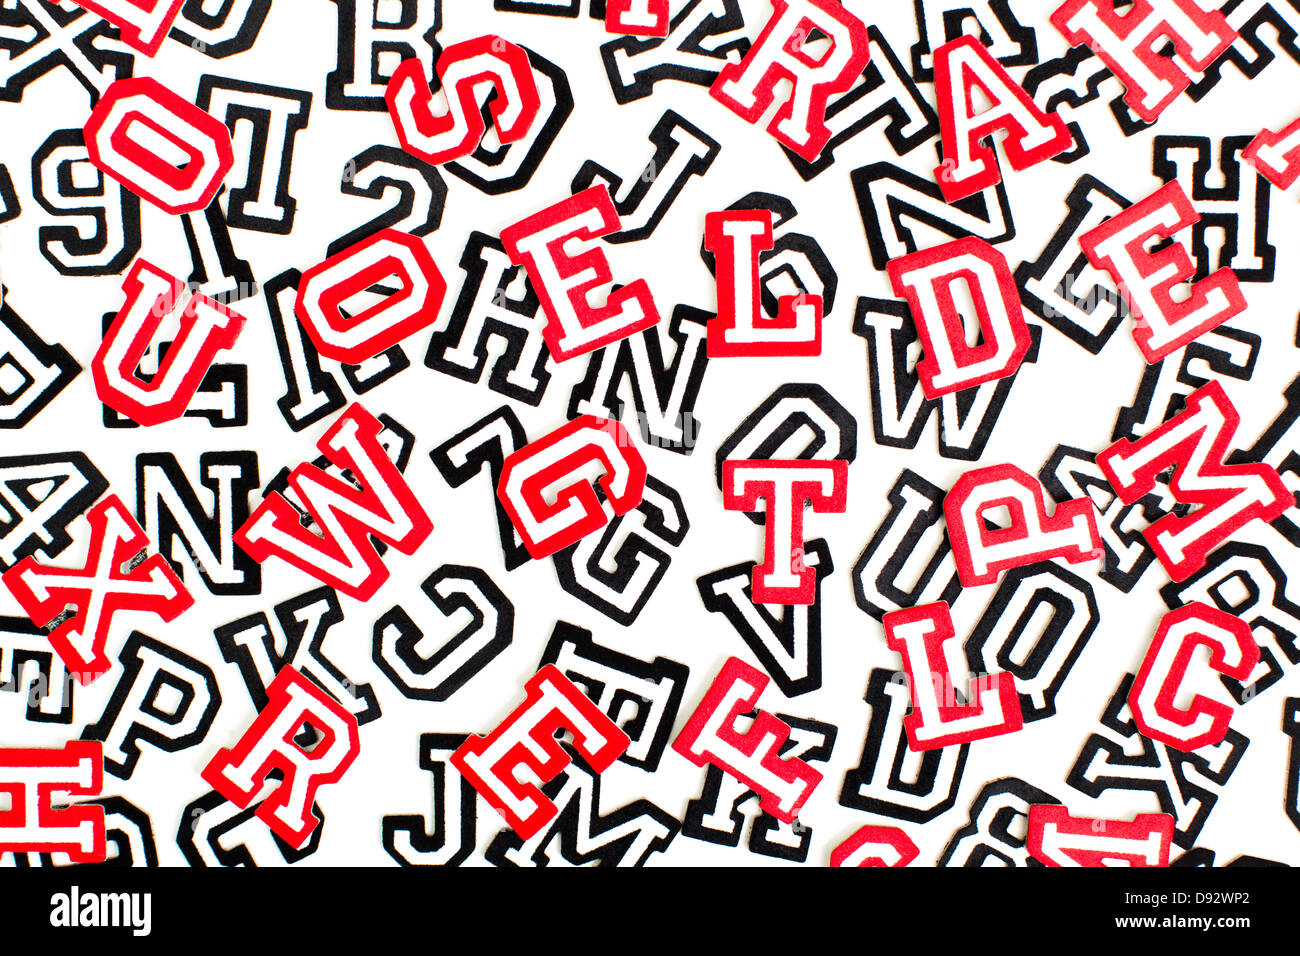 Eine Reihe von Varsity Schrift Aufkleber Buchstaben und Zahlen in rot und schwarz Gliederung Stockfoto